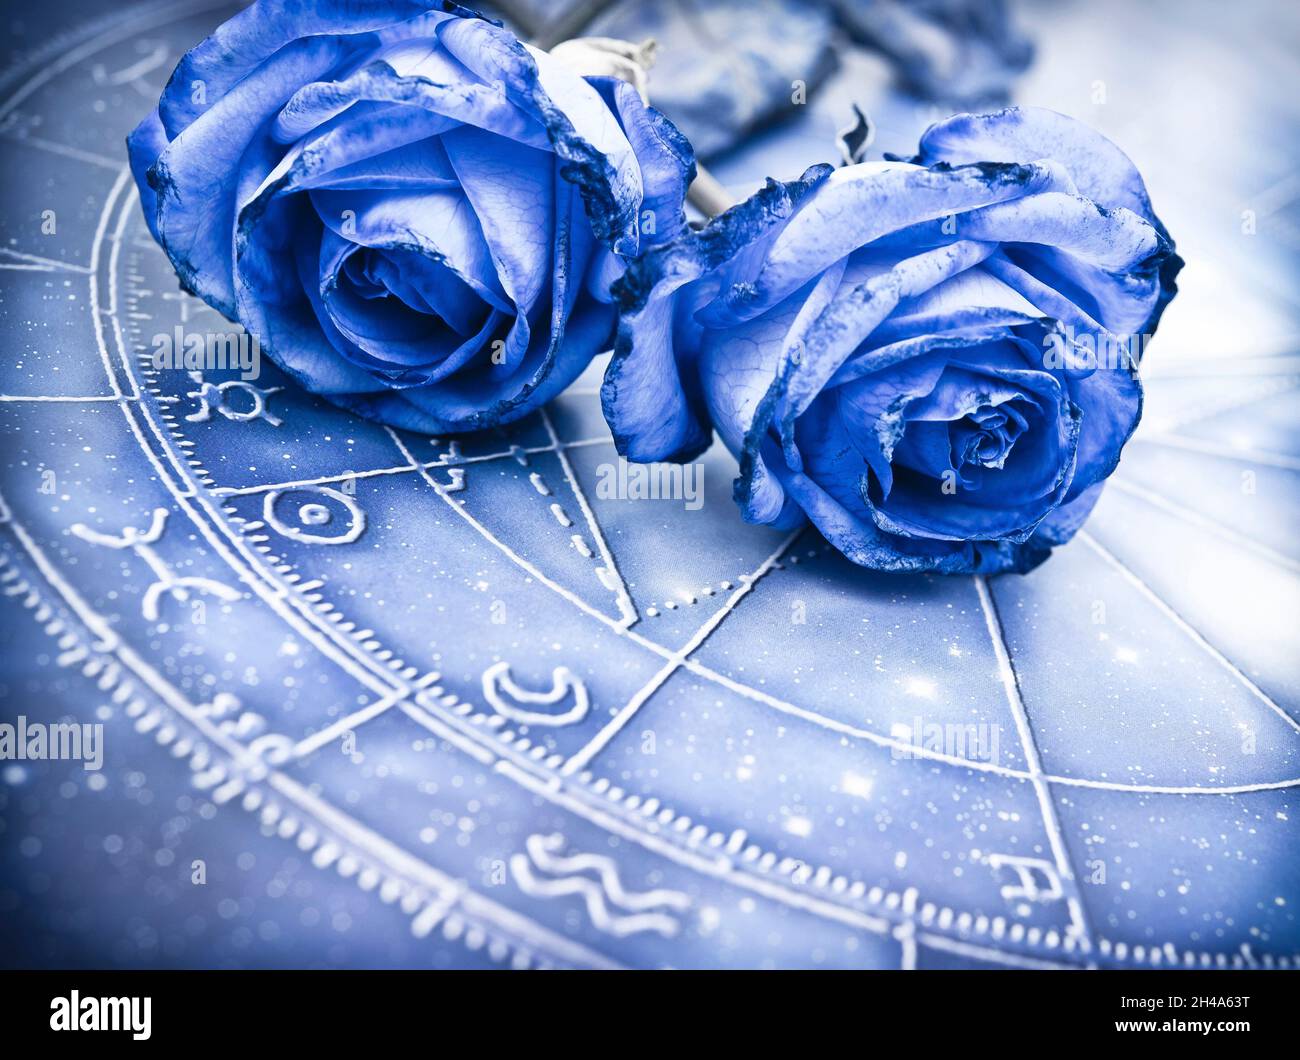 Romantisches Astrologie-Konzept mit Horoskop, blauem Tierkreis und schöner Blume blau Rose wie Tierkreis und Liebe und Ralationship Thema Stockfoto